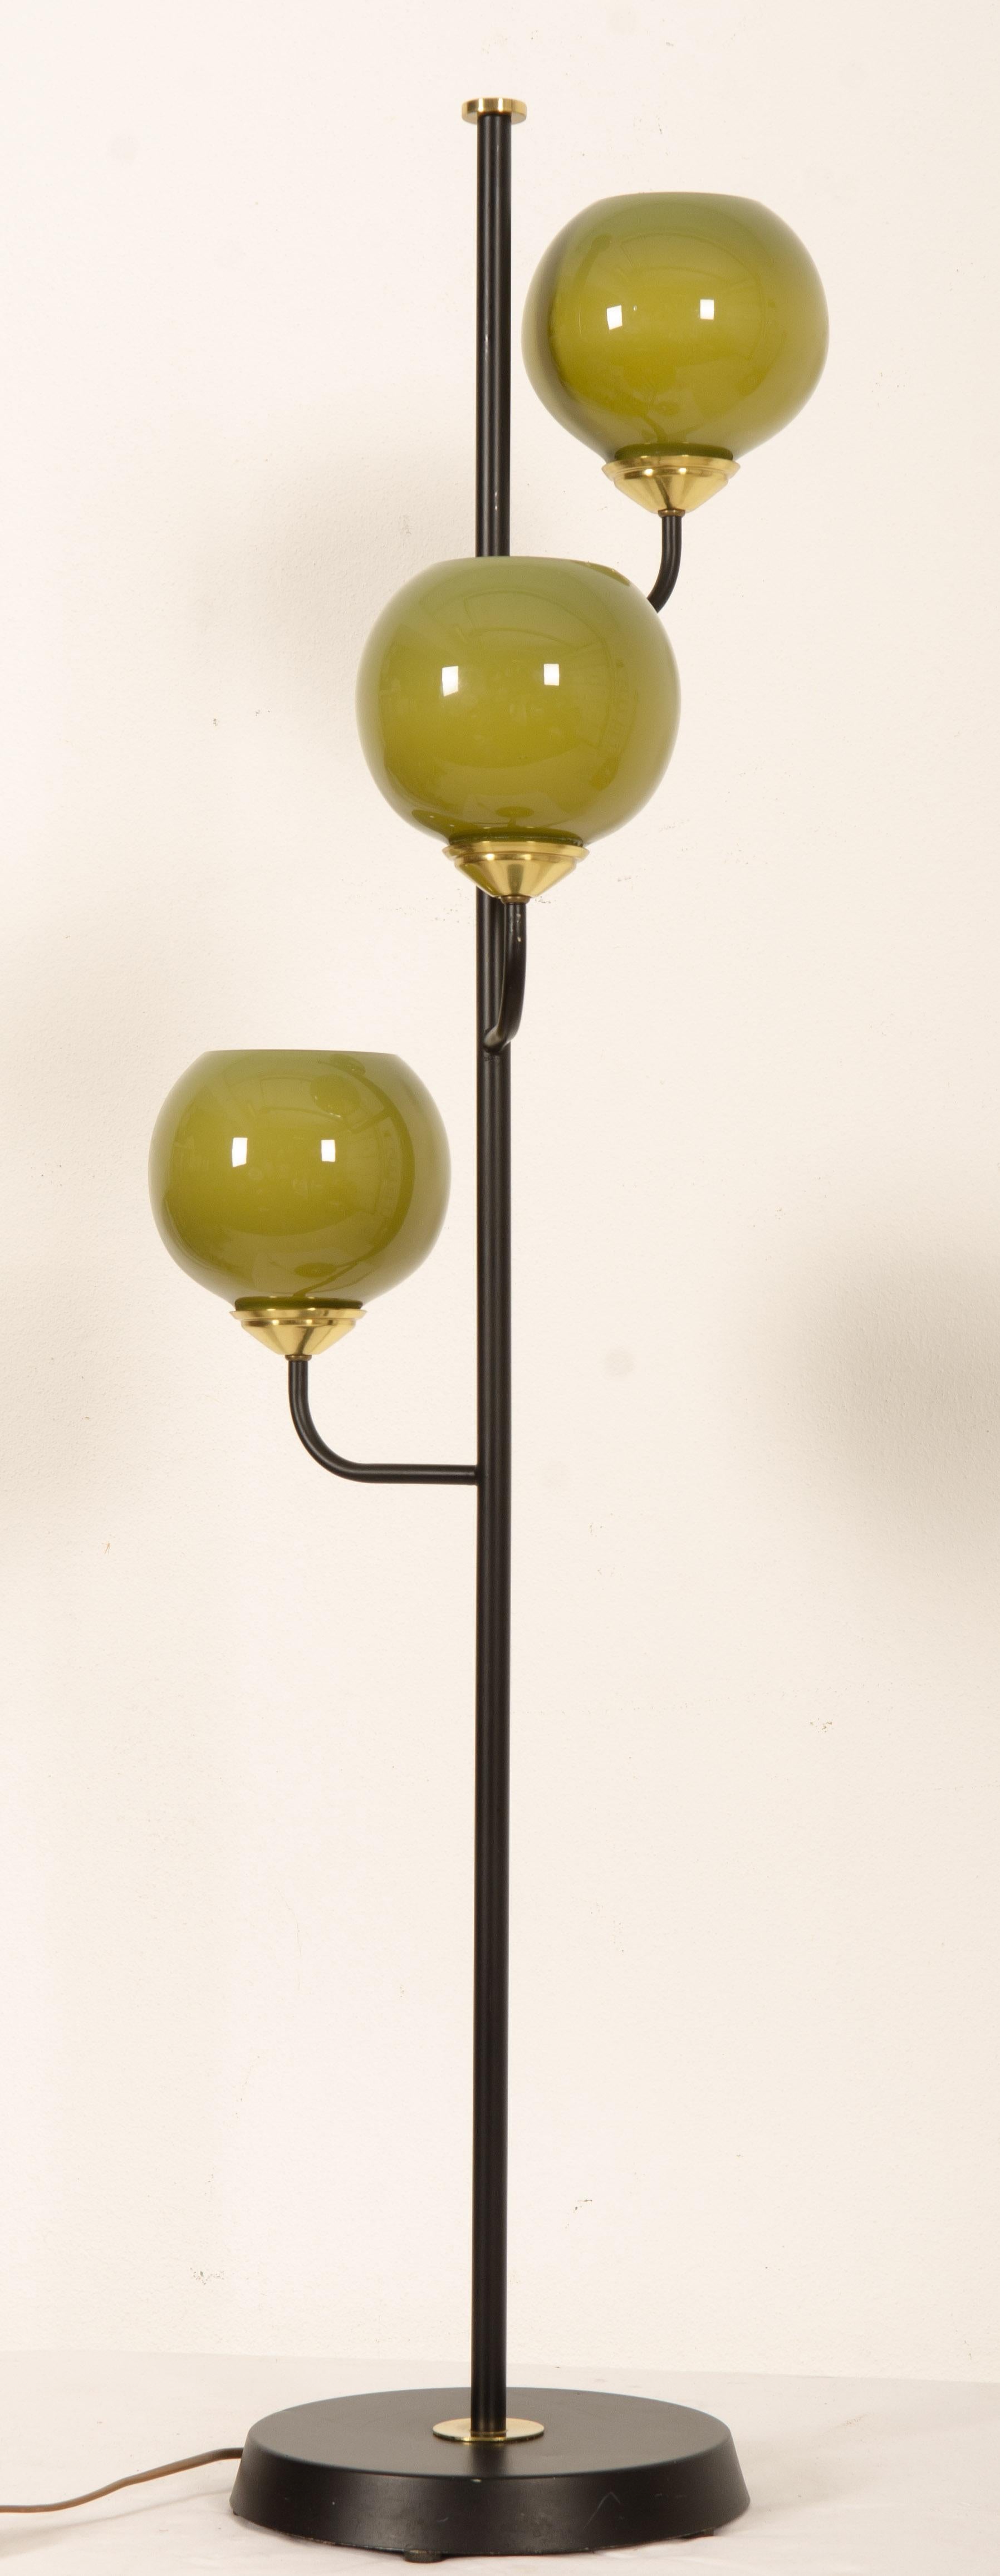 Base en fonte, trois bras avec abat-jour en verre vert en forme de boule et équipés chacun d'une douille en bakélite E27. Conçue en Suède dans les années 1970.